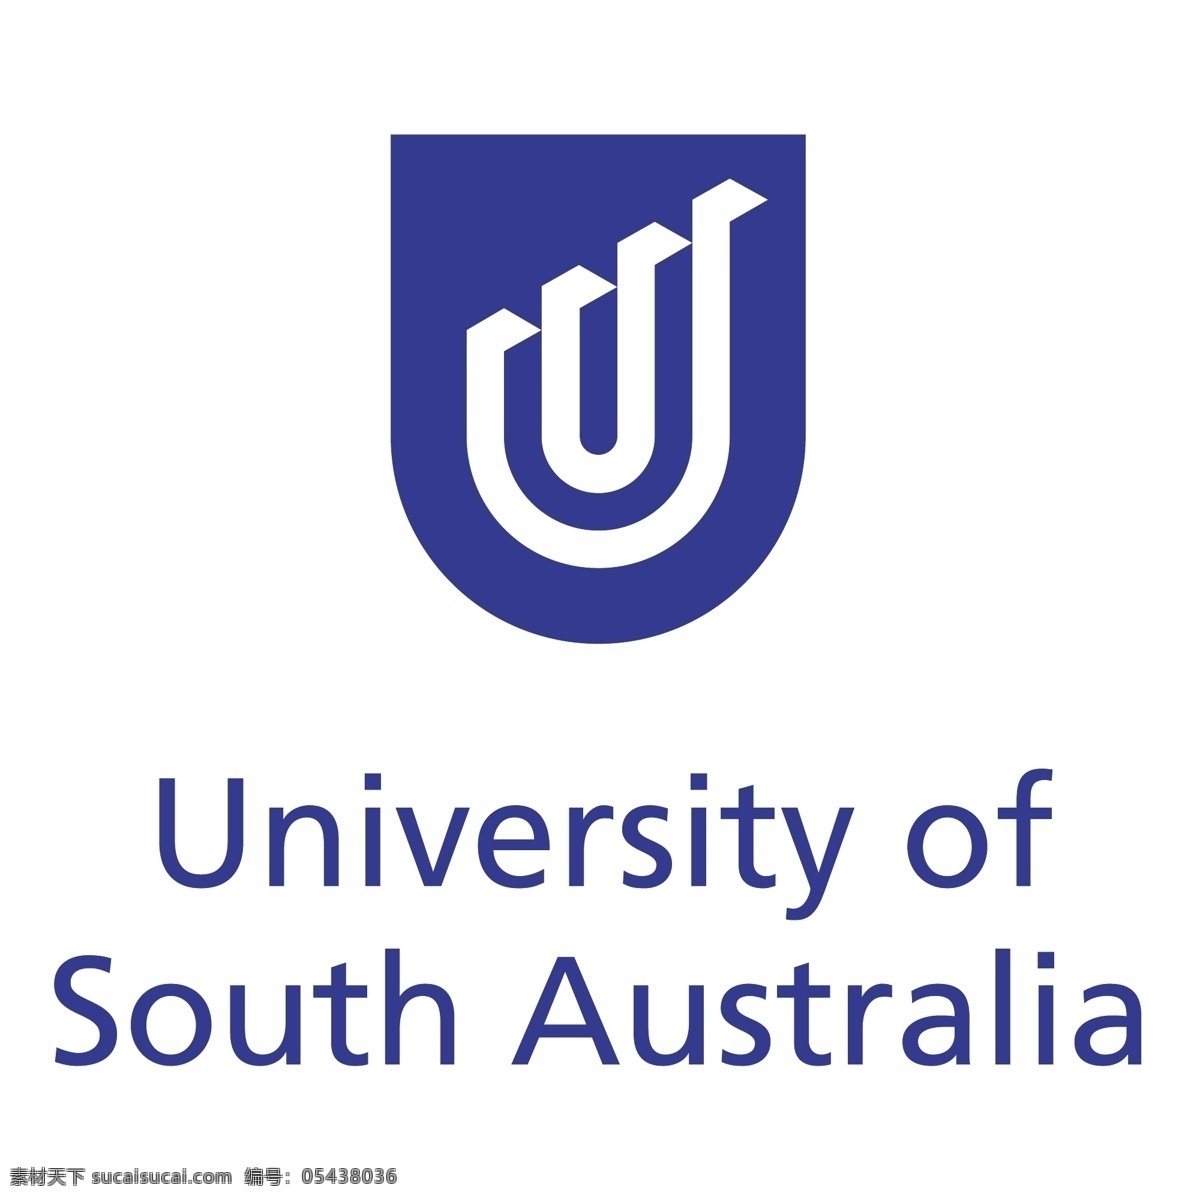 南澳大学0 南澳大学 矢量 南澳 大学 标志 自由 unisa 向量 矢量图 建筑家居